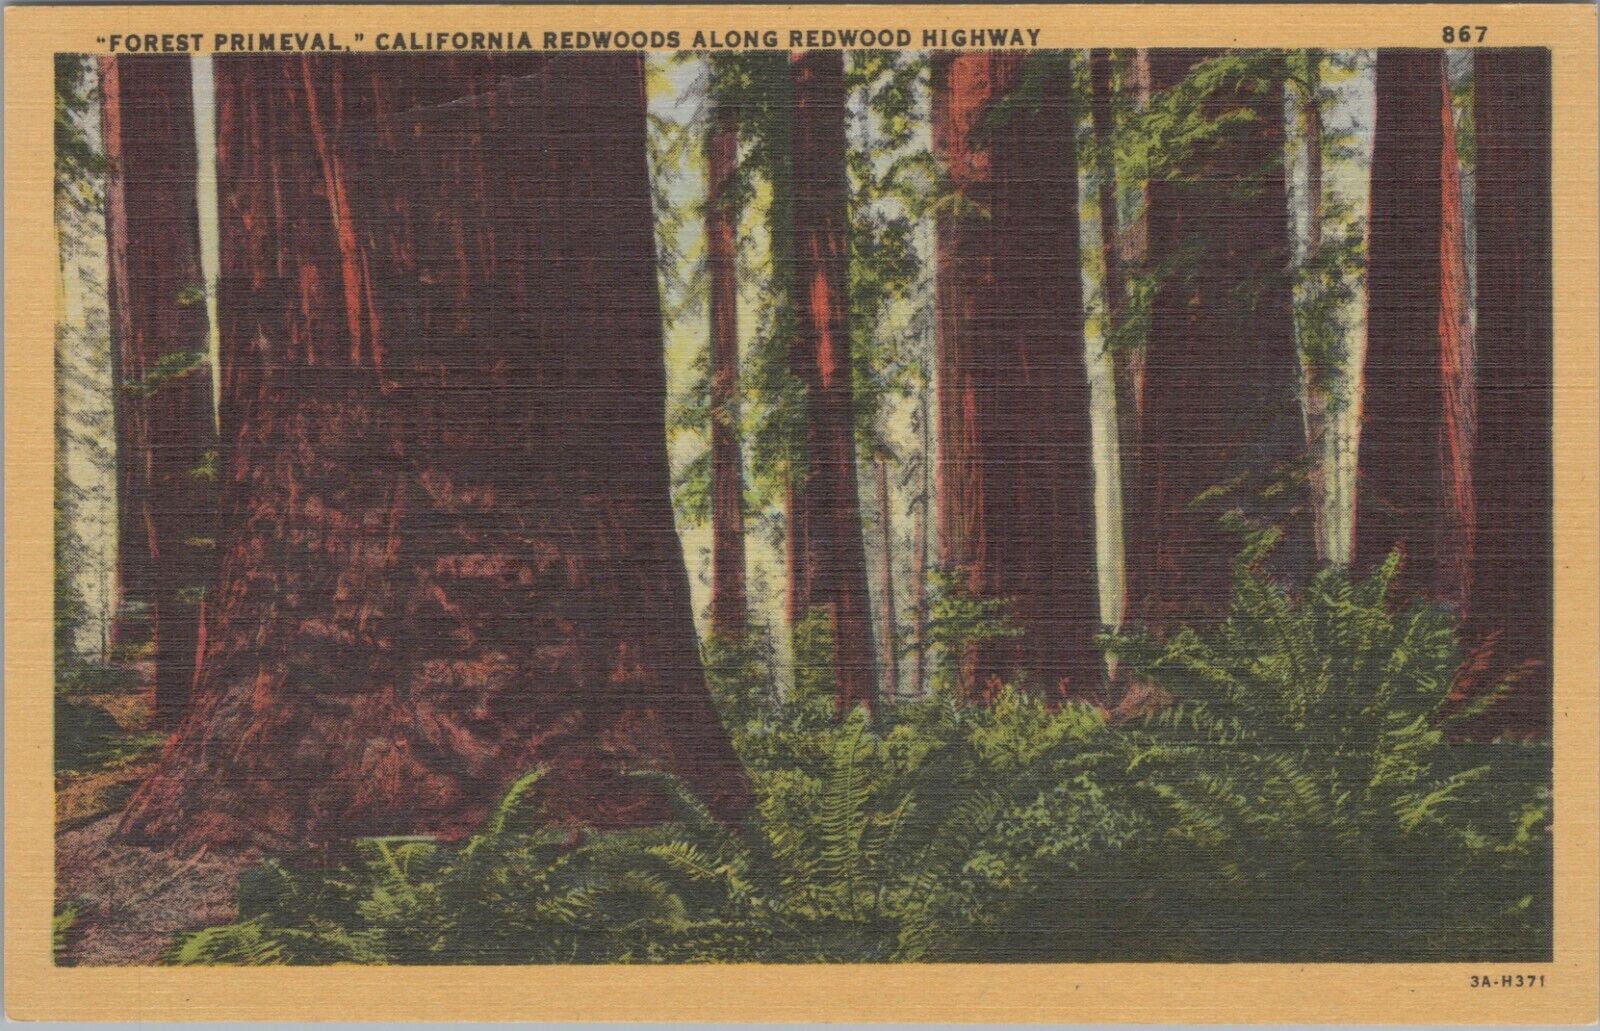 California Redwoods Along Redwood Highway Forest Primeval Postcard